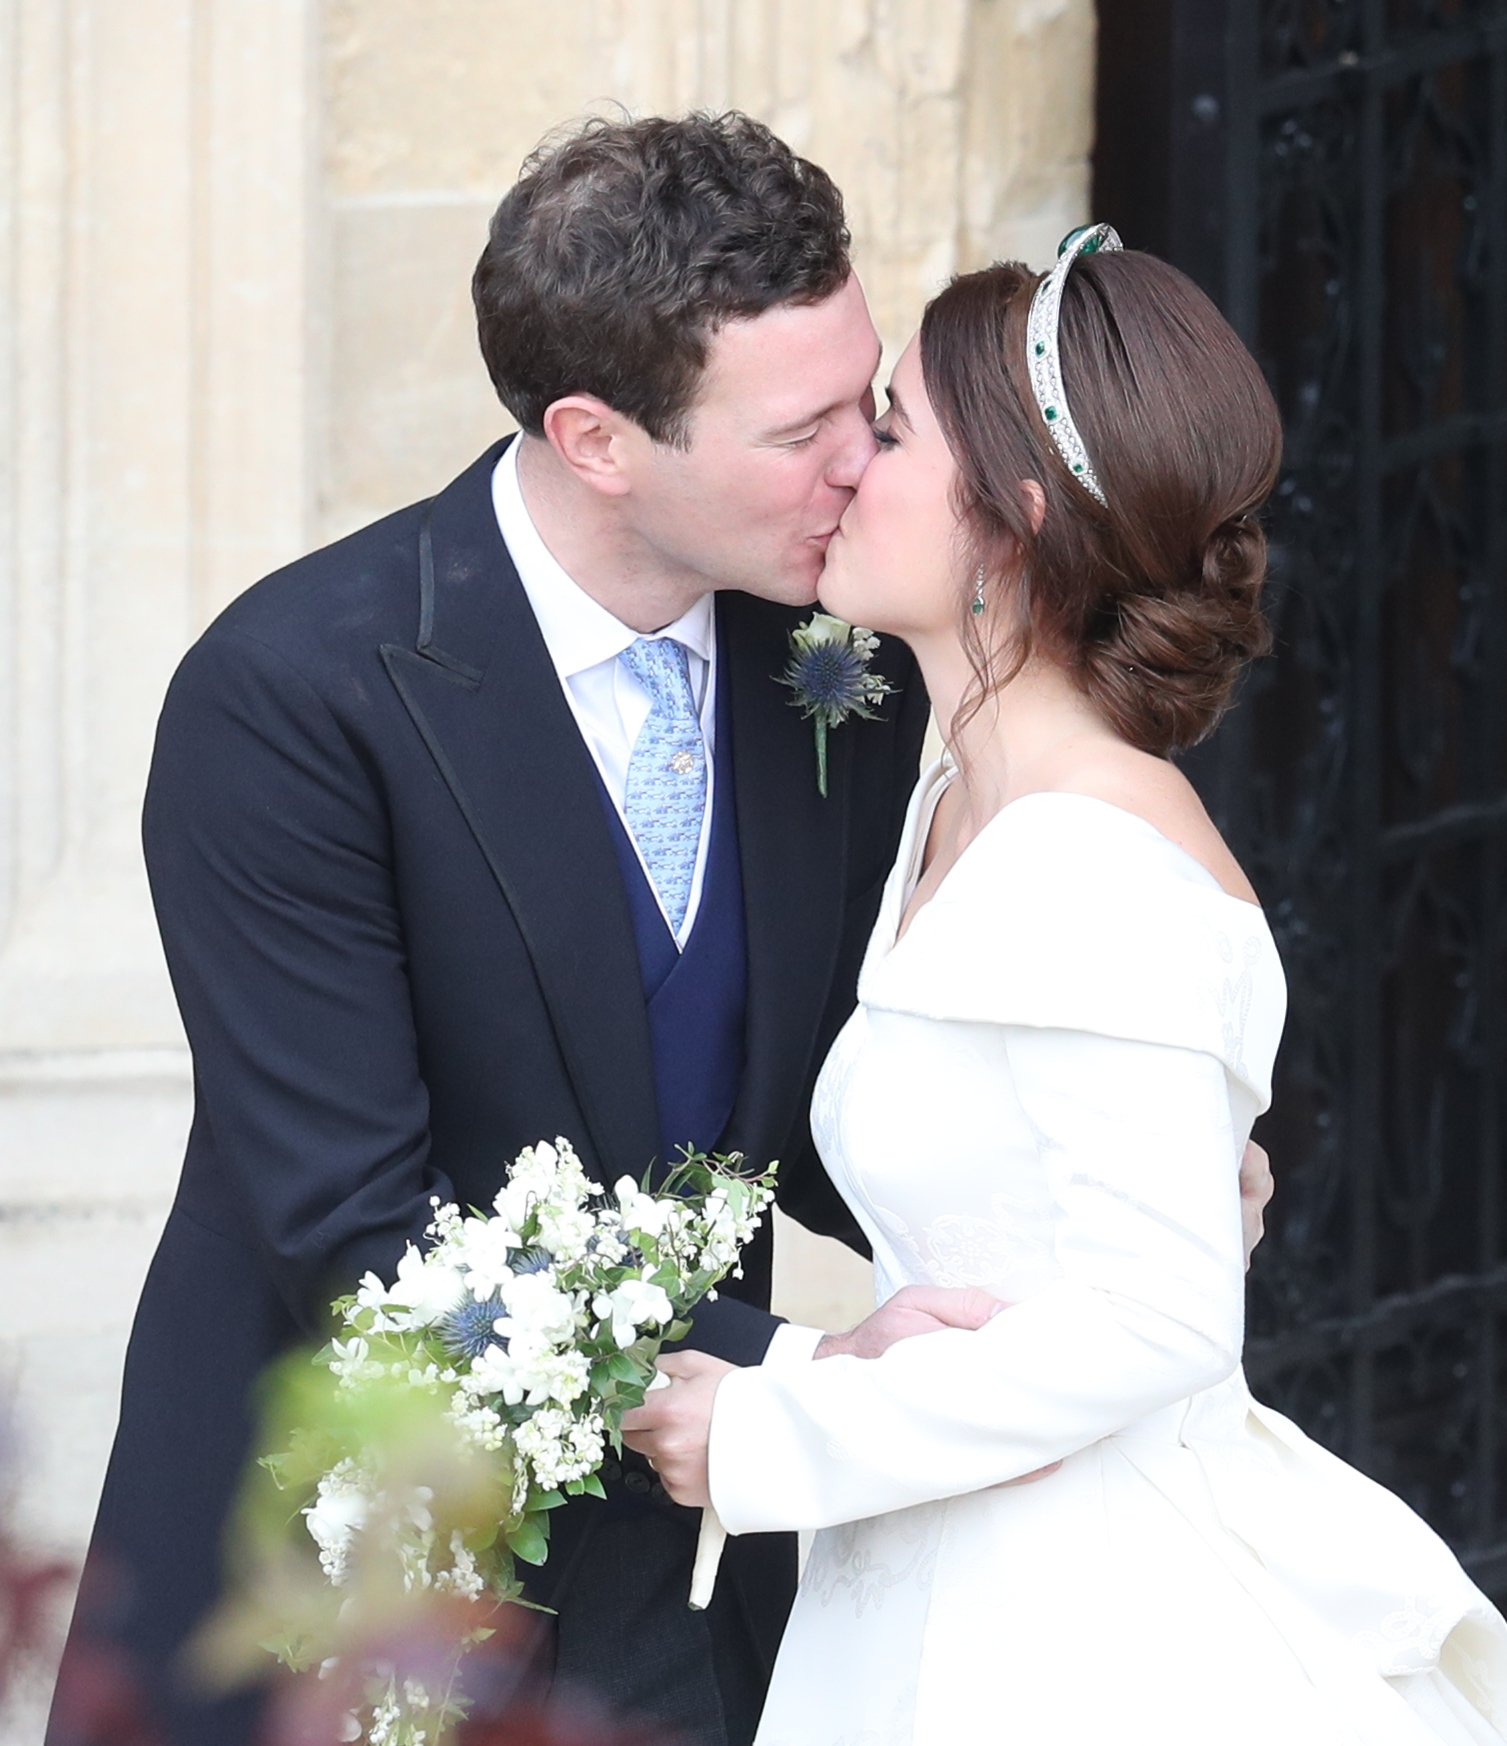 Die Jungvermählten Prinzessin Eugenie von York und Mr. 2 verlassen das Haus nach ihrer Hochzeit in der St. George's Chapel am 12. Oktober 2018 in Windsor, England. | Quelle: Getty Images